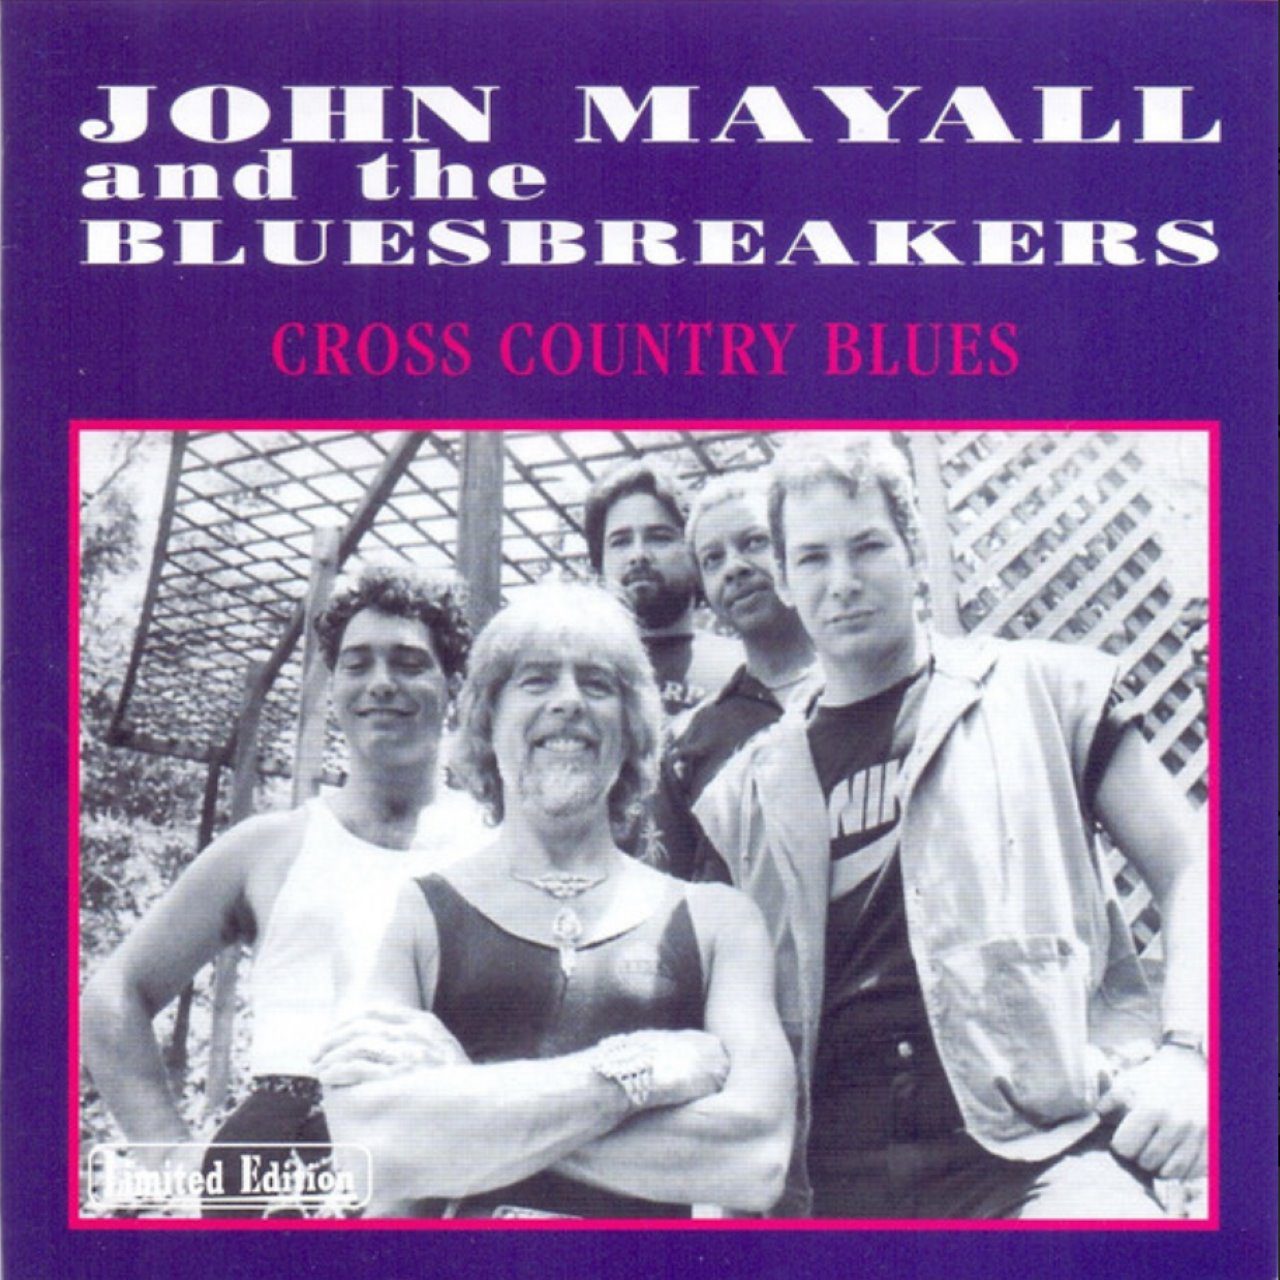 John Mayall & Bluesbreakers – Cross Country Blues cover album